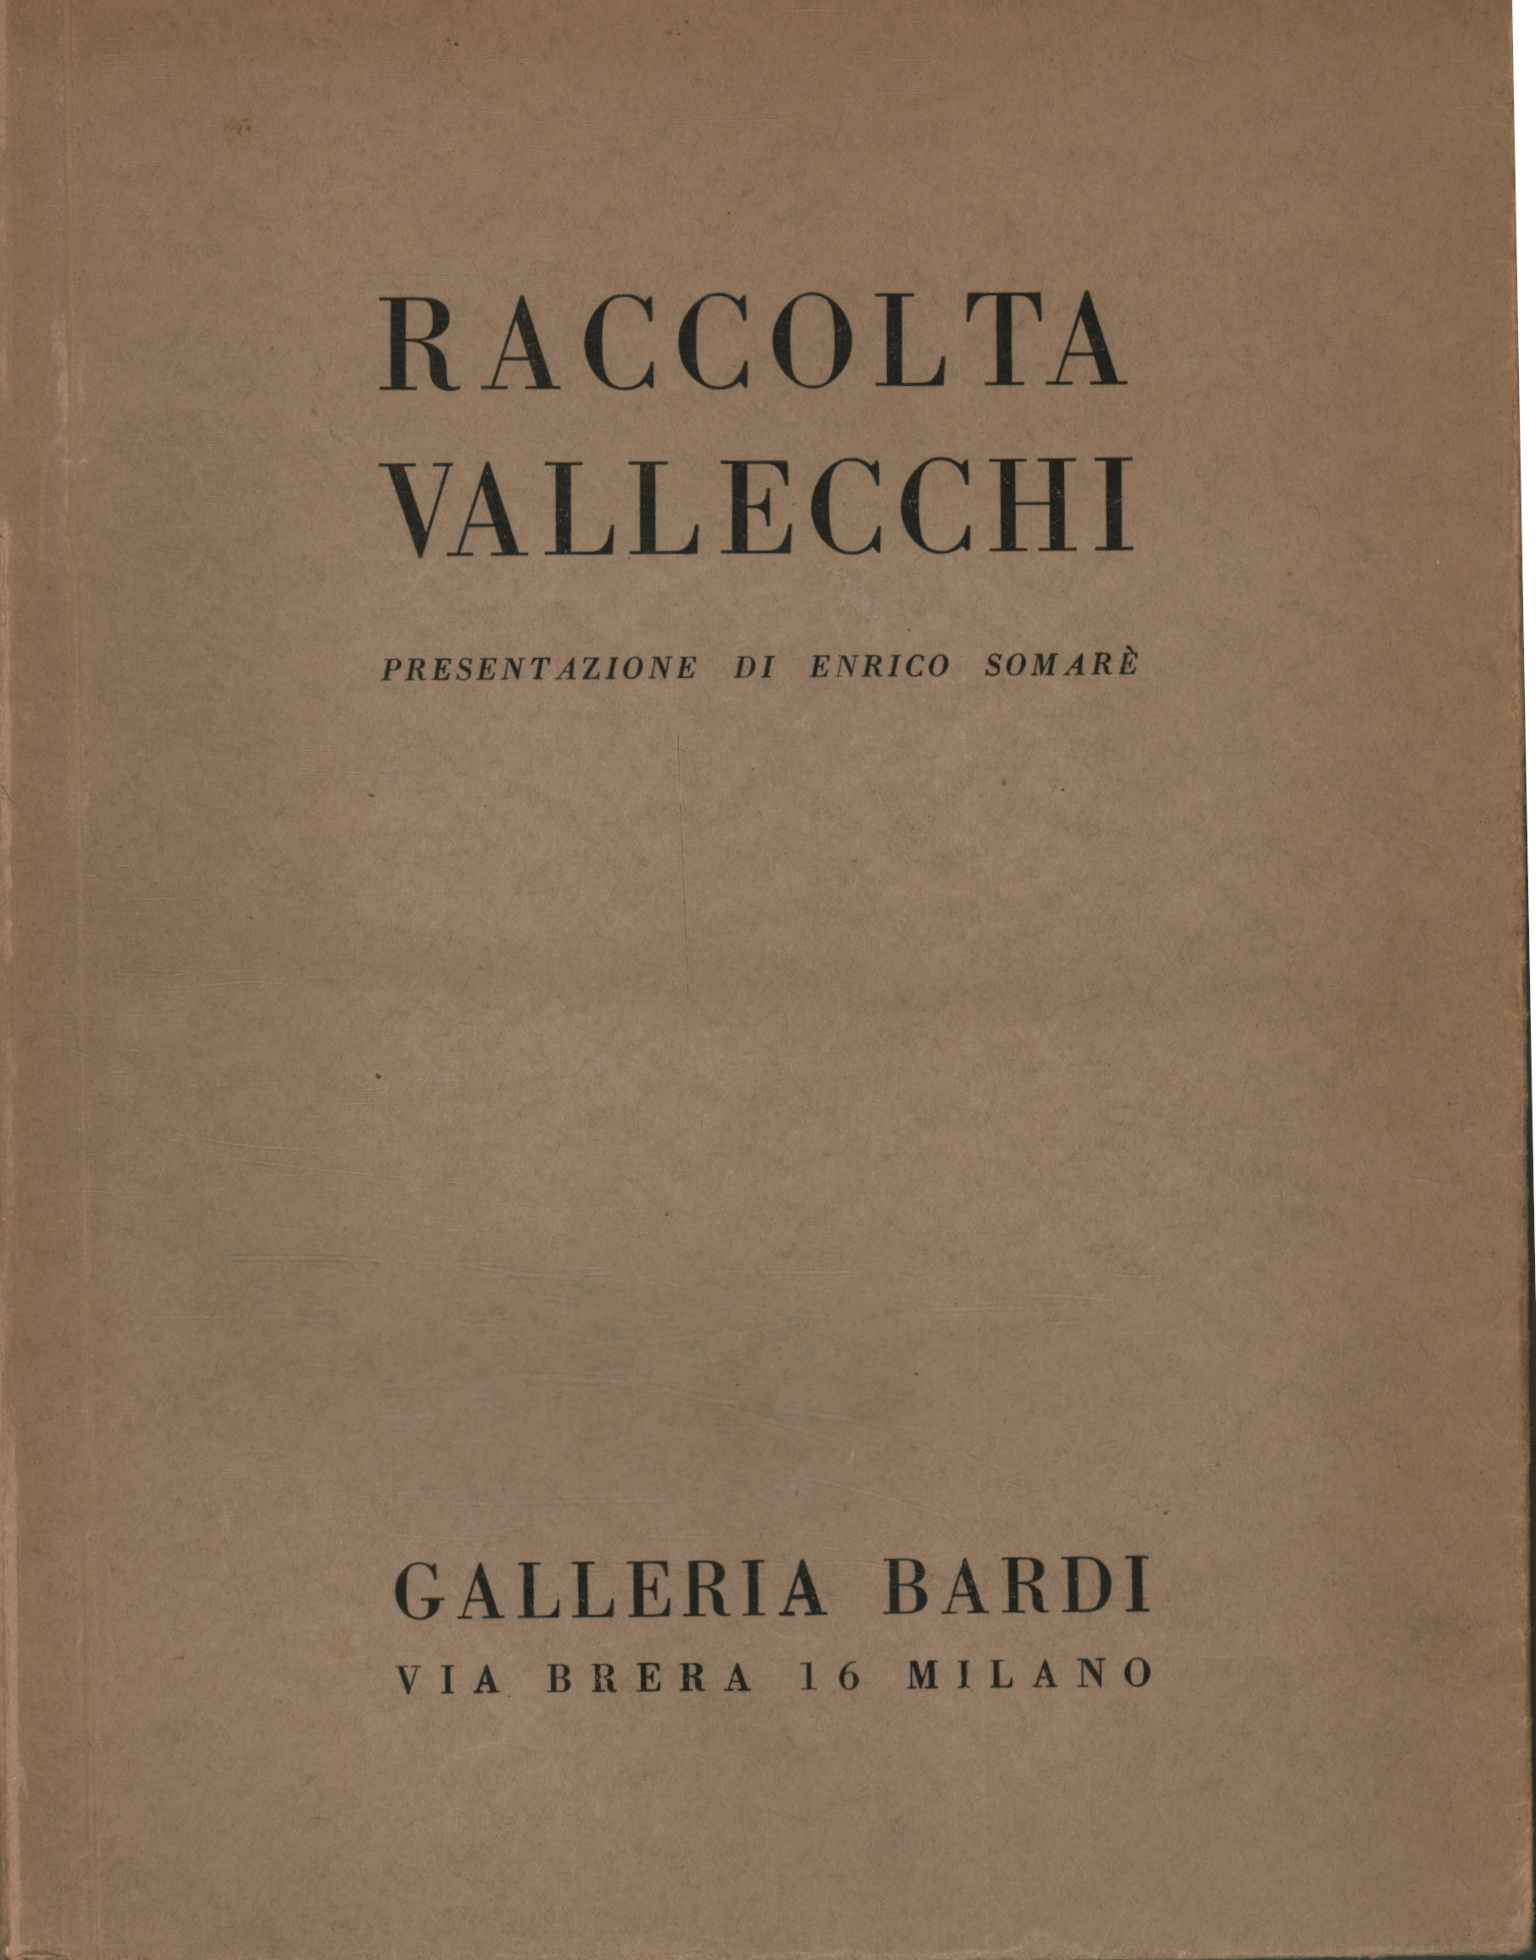 Vallecchi collection